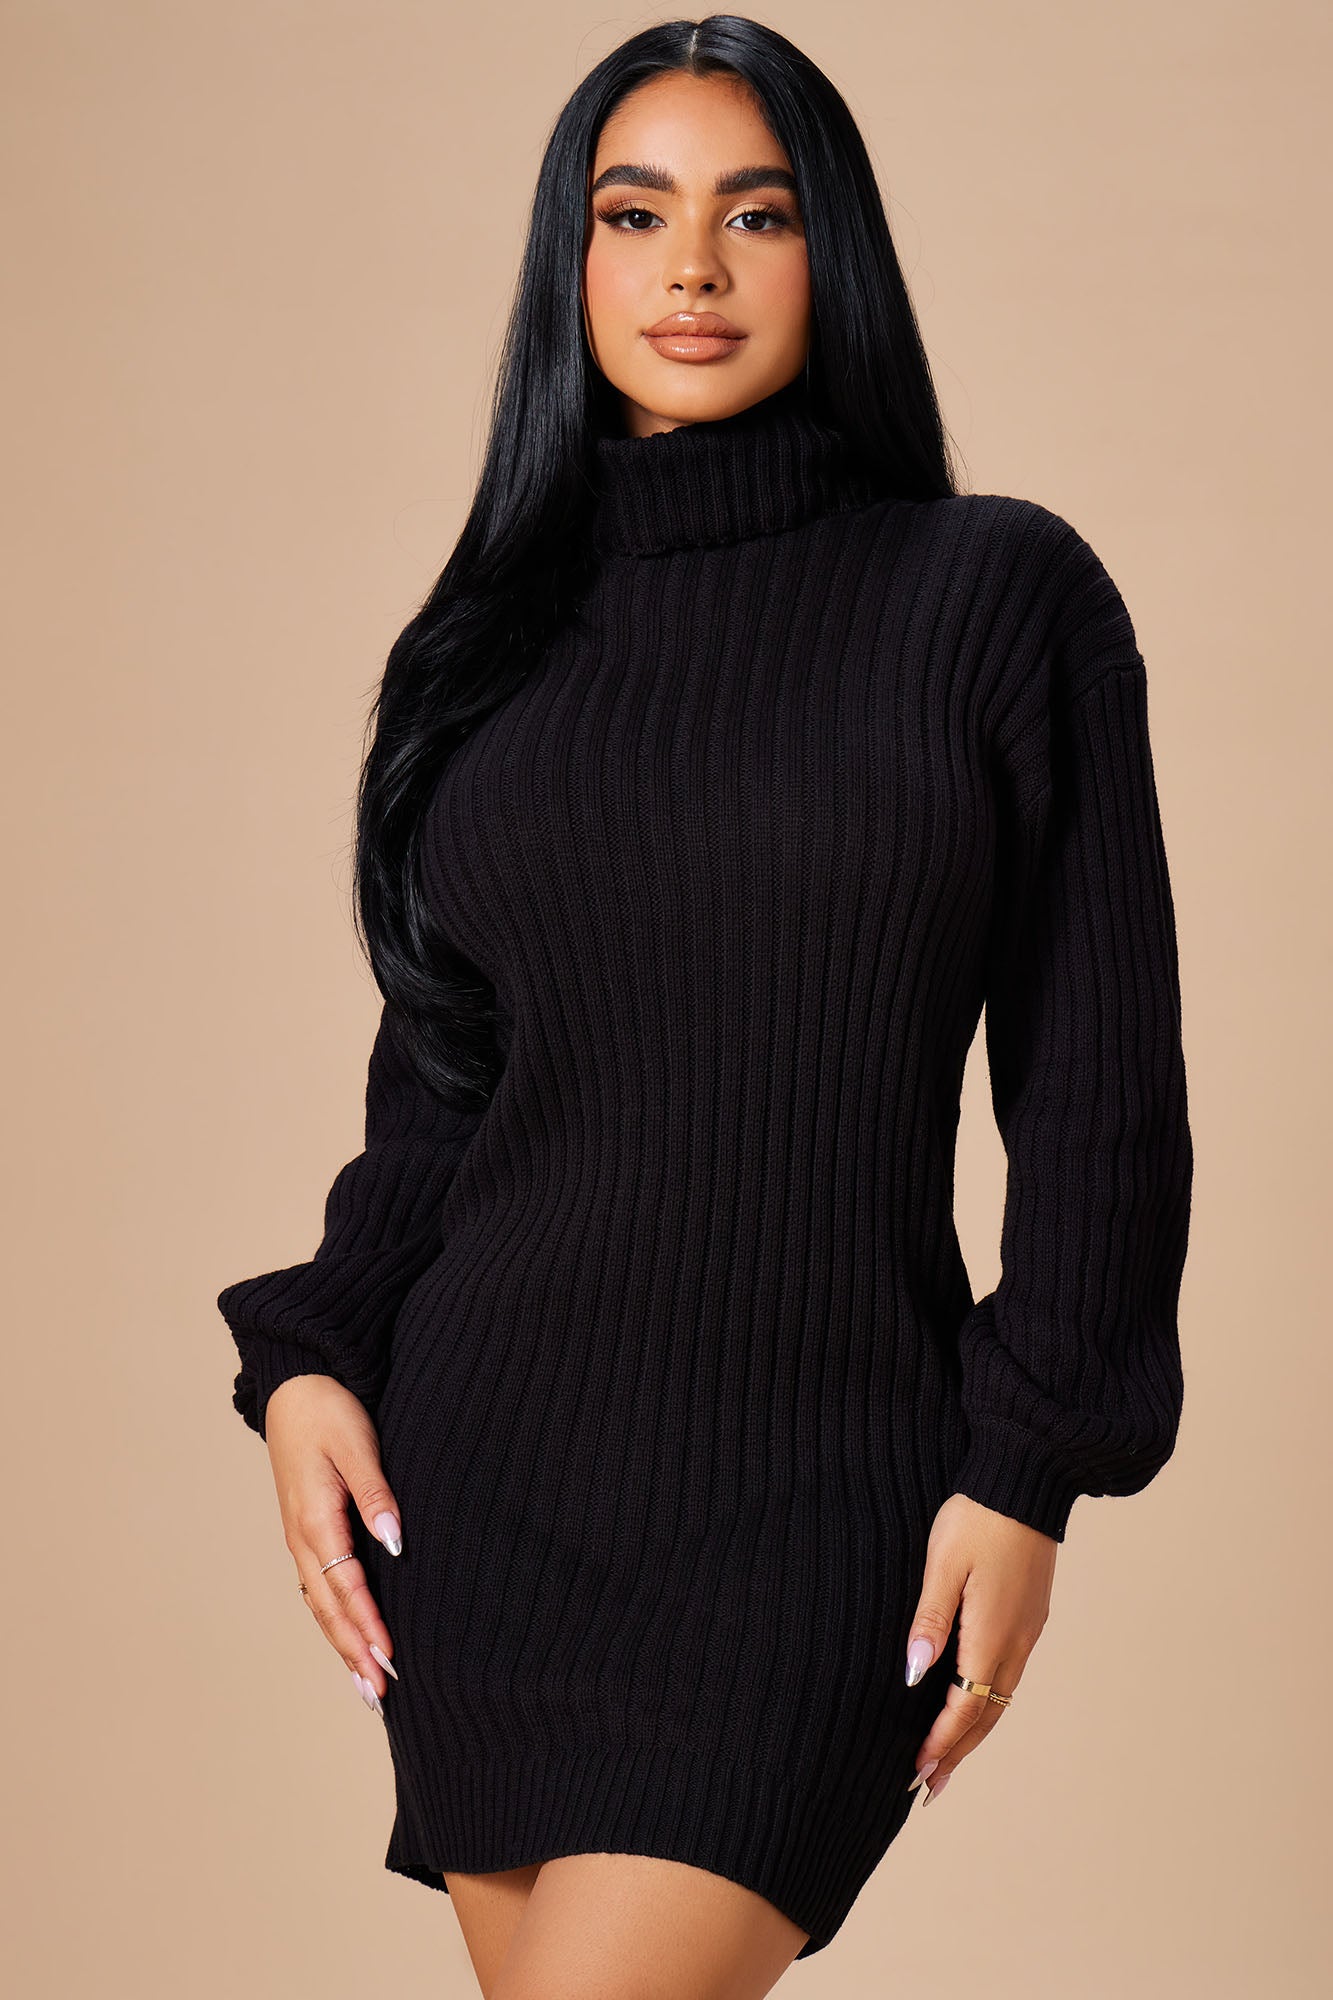 Black Sweater Dress - V Neck Sweater Dress - Black Chunky Knit Dress